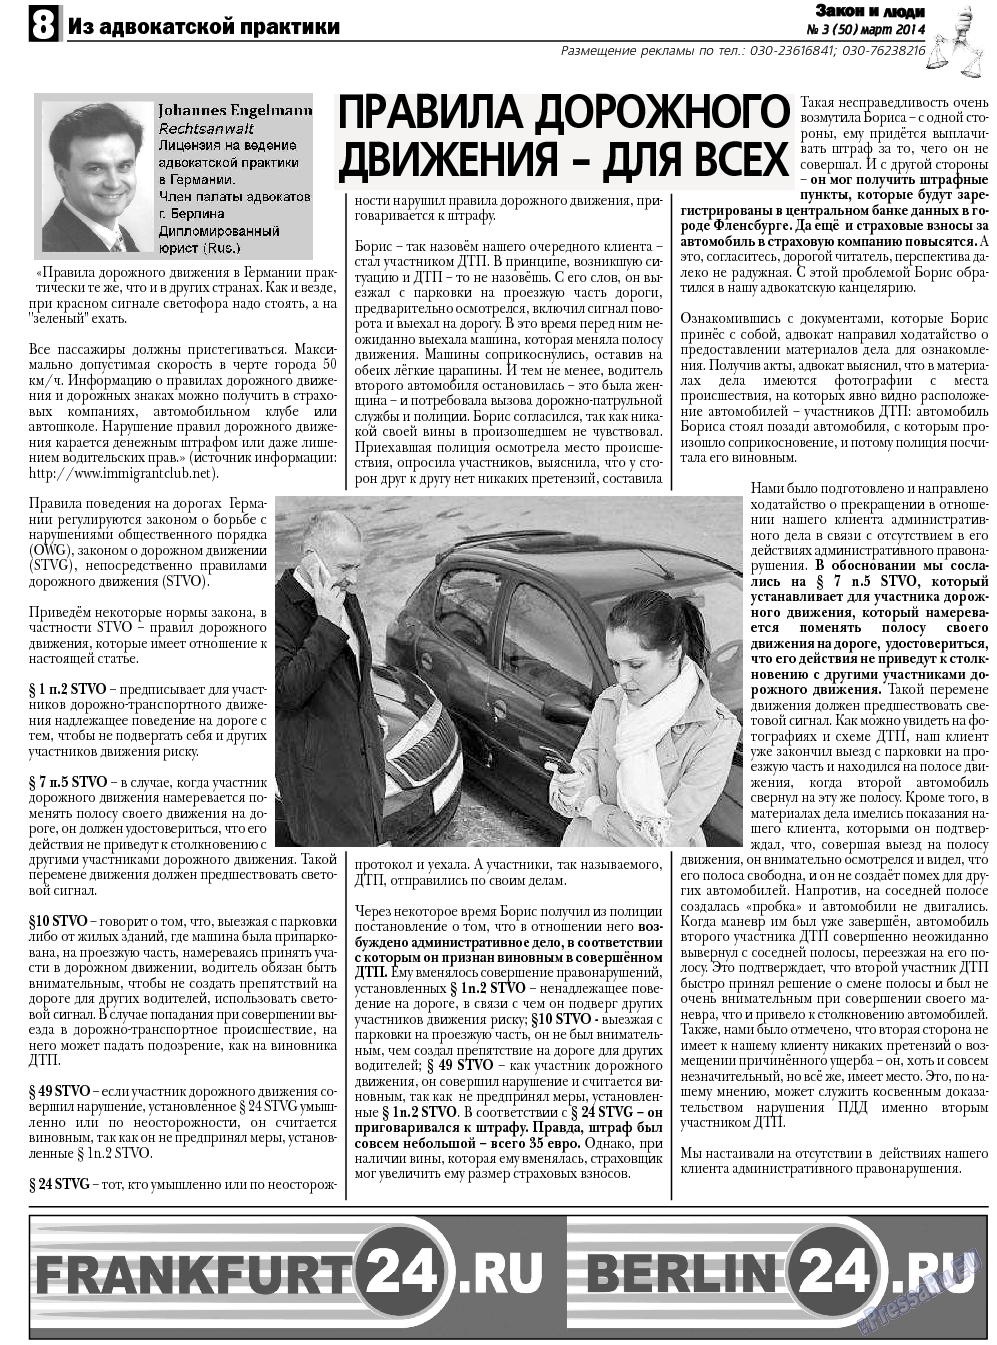 Закон и люди, газета. 2014 №3 стр.8